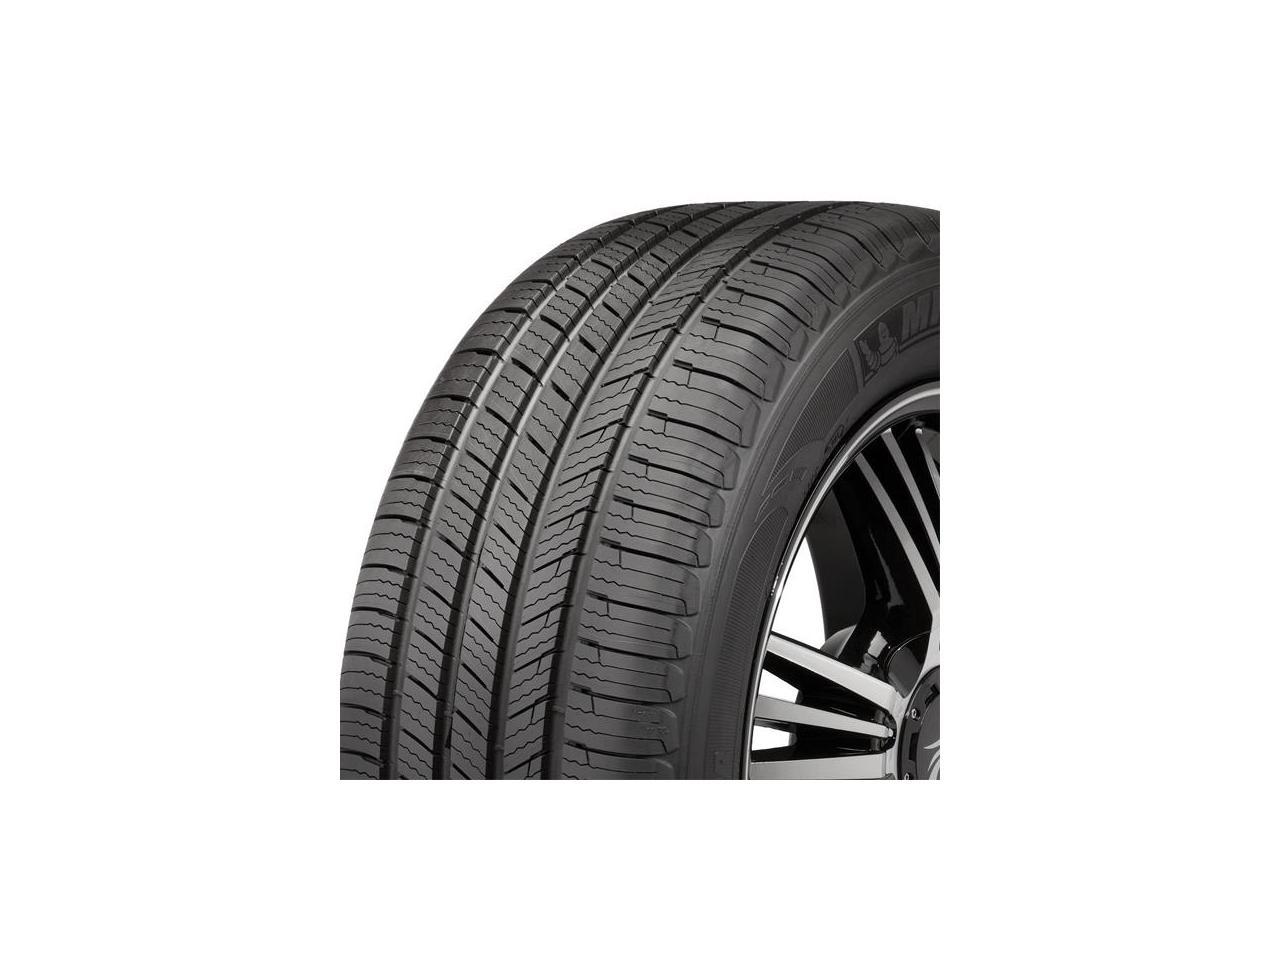 4 New LT295/70R18 E 10 ply Michelin Defender LTX MS 295 70 18 Tires 4 Ply Vs 10 Ply Gas Mileage